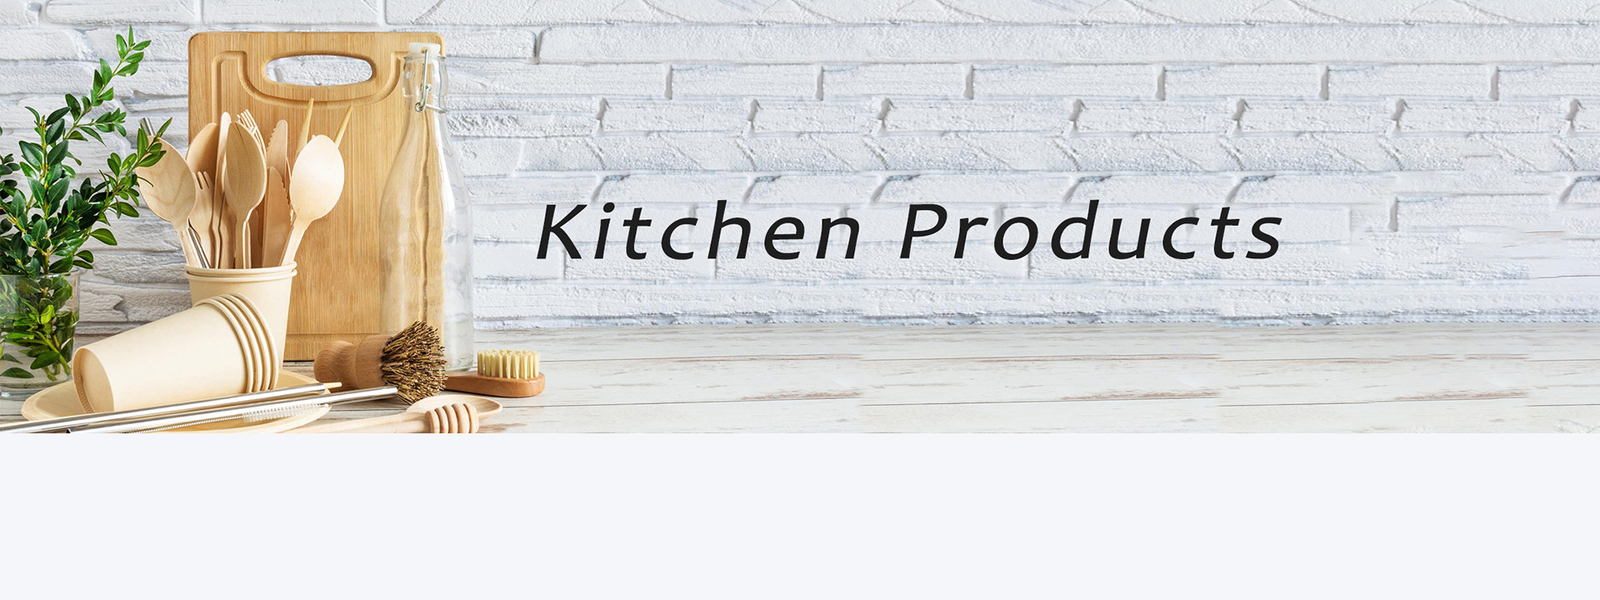 jakość Produkty do kuchni gospodarstwa domowego fabryka